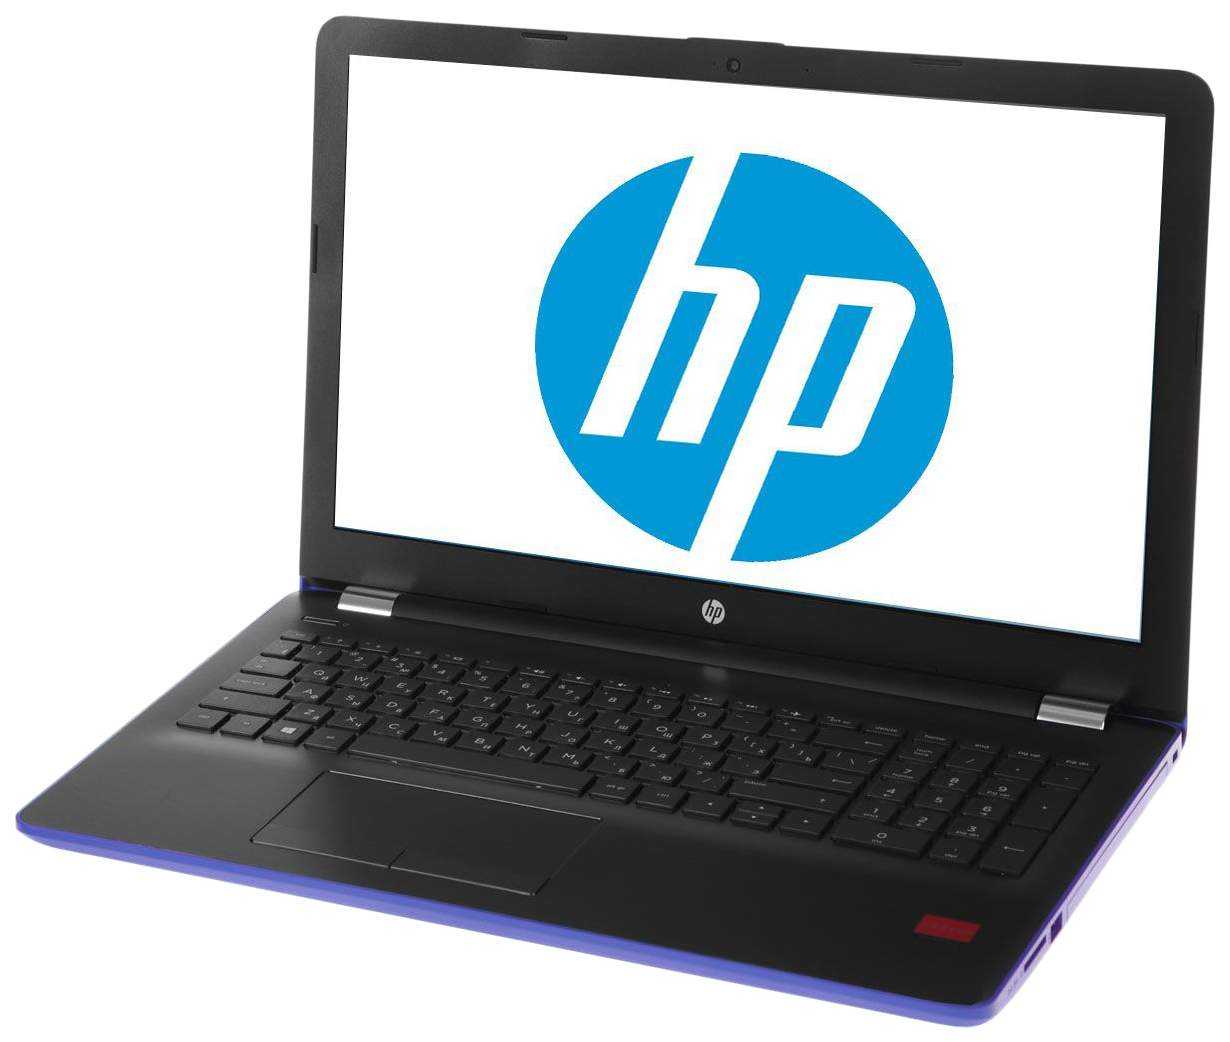 Ноутбук HP 15-bs100ur (2VZ79EA) - подробные характеристики обзоры видео фото Цены в интернет-магазинах где можно купить ноутбук HP 15-bs100ur (2VZ79EA)